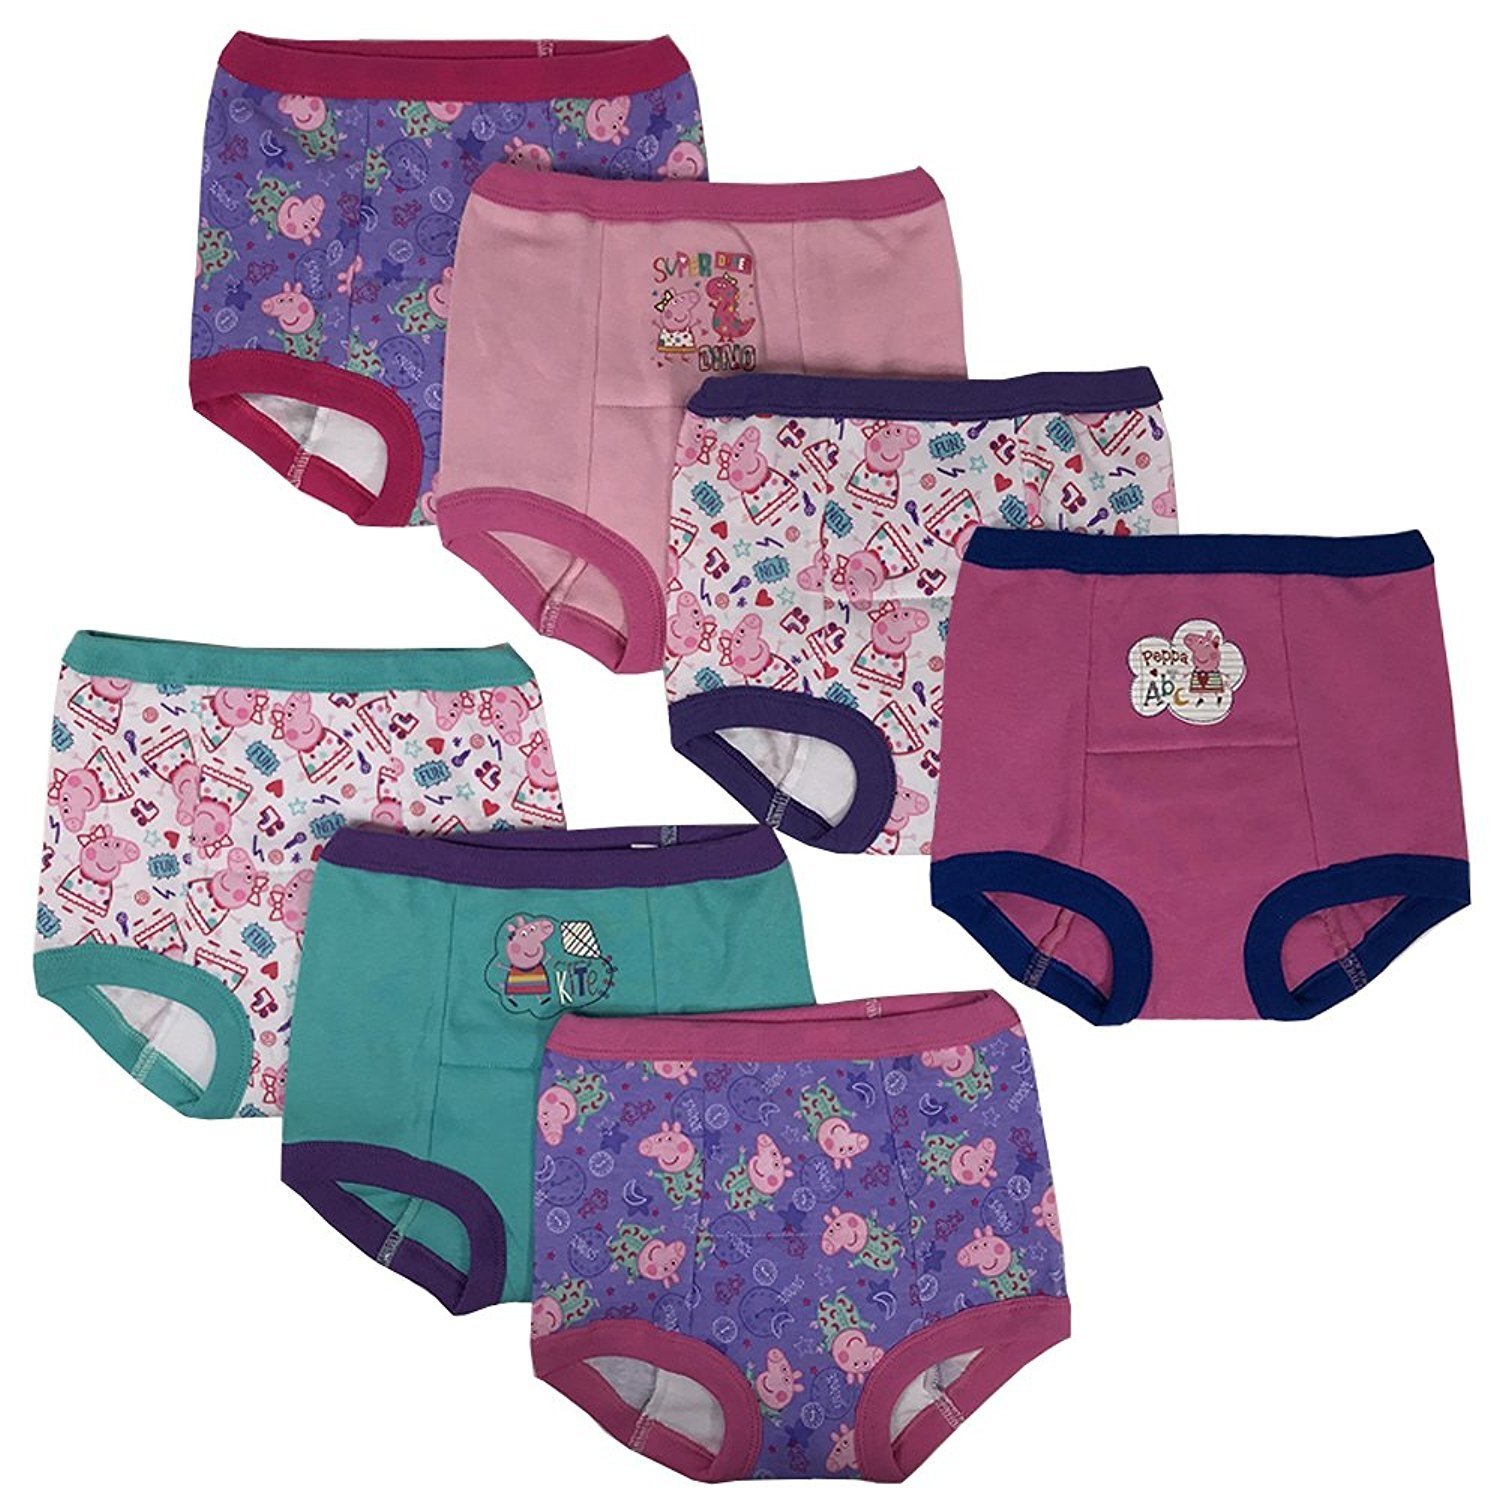 Peppa Pig Girls Potty Training Pants Panties 7-pack Underwear